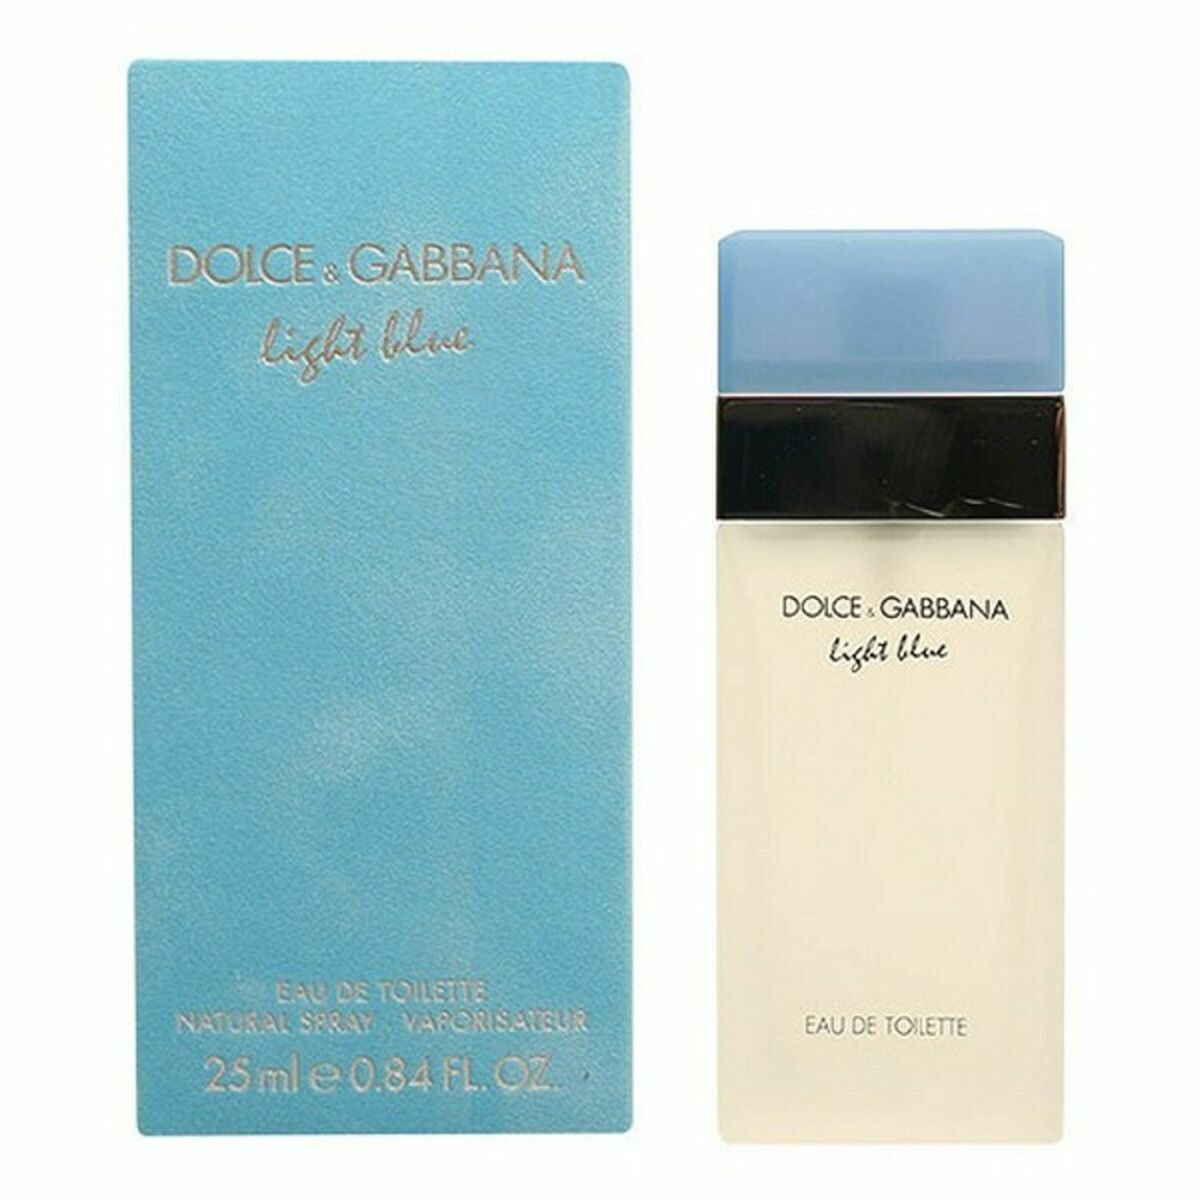 Women's Perfume Dolce & Gabbana Light Blue EDT